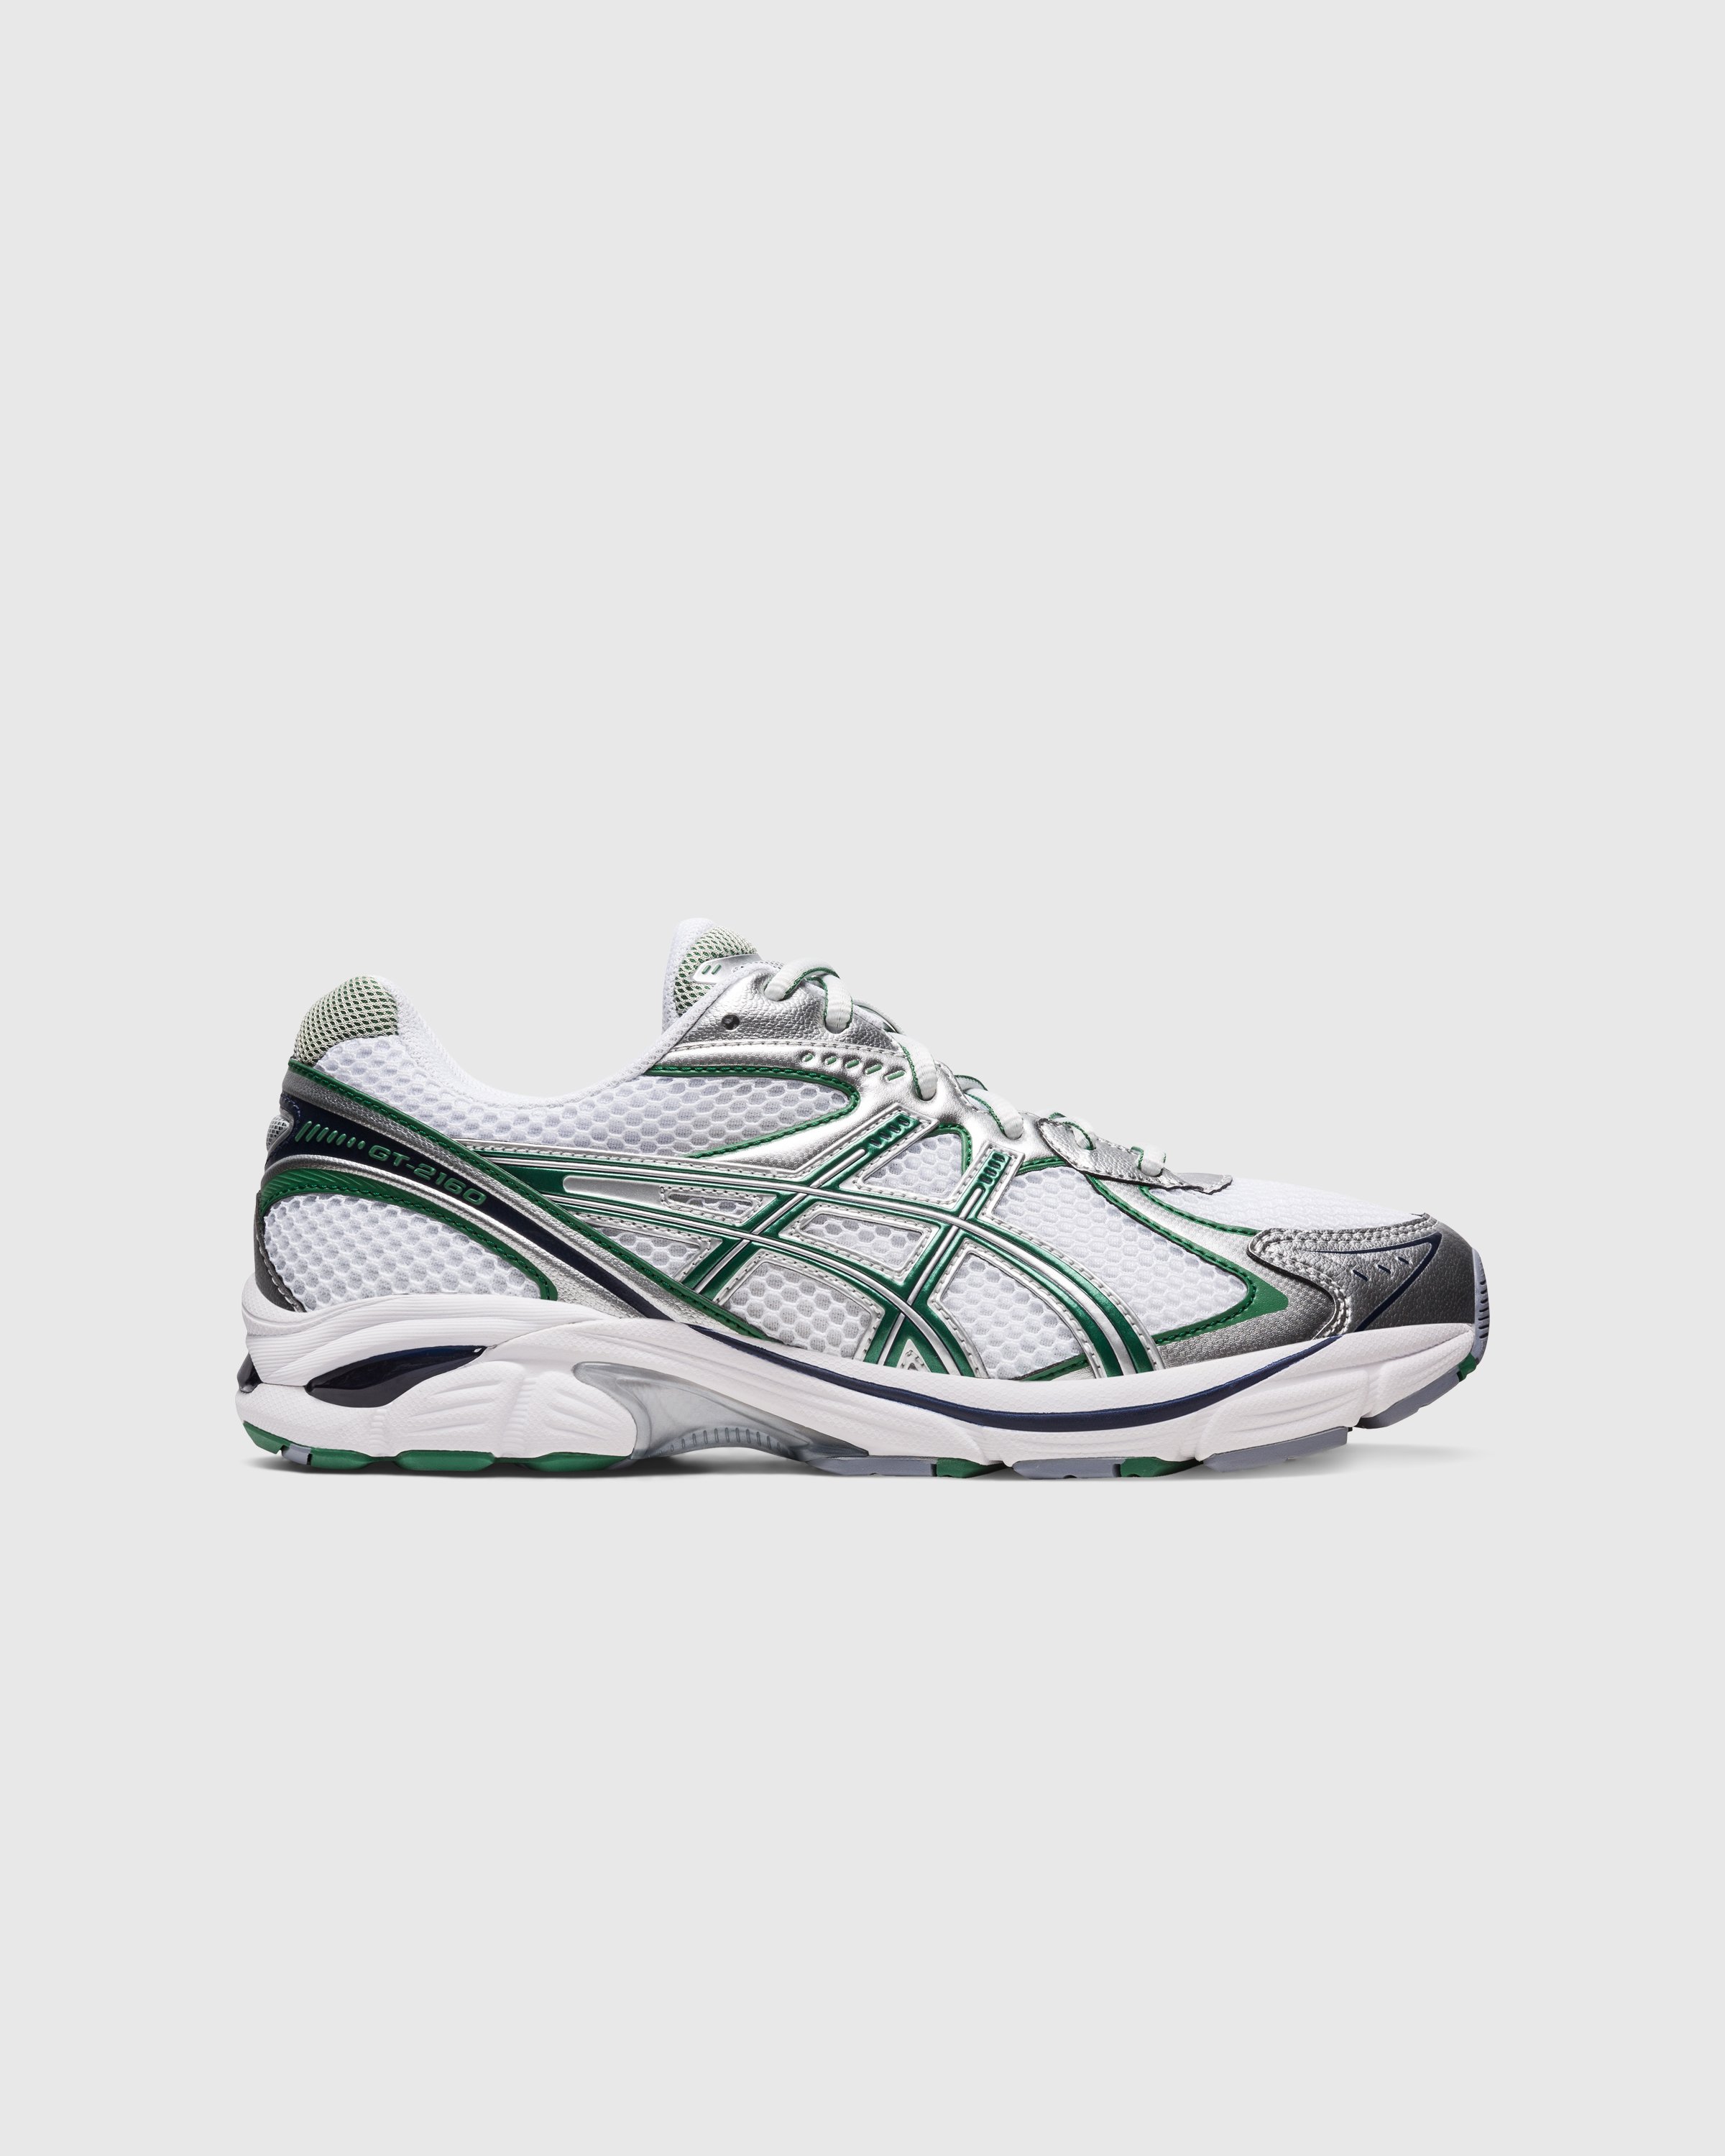 asics - GT-2160 White/Shamrock Green - Footwear - Multi - Image 1